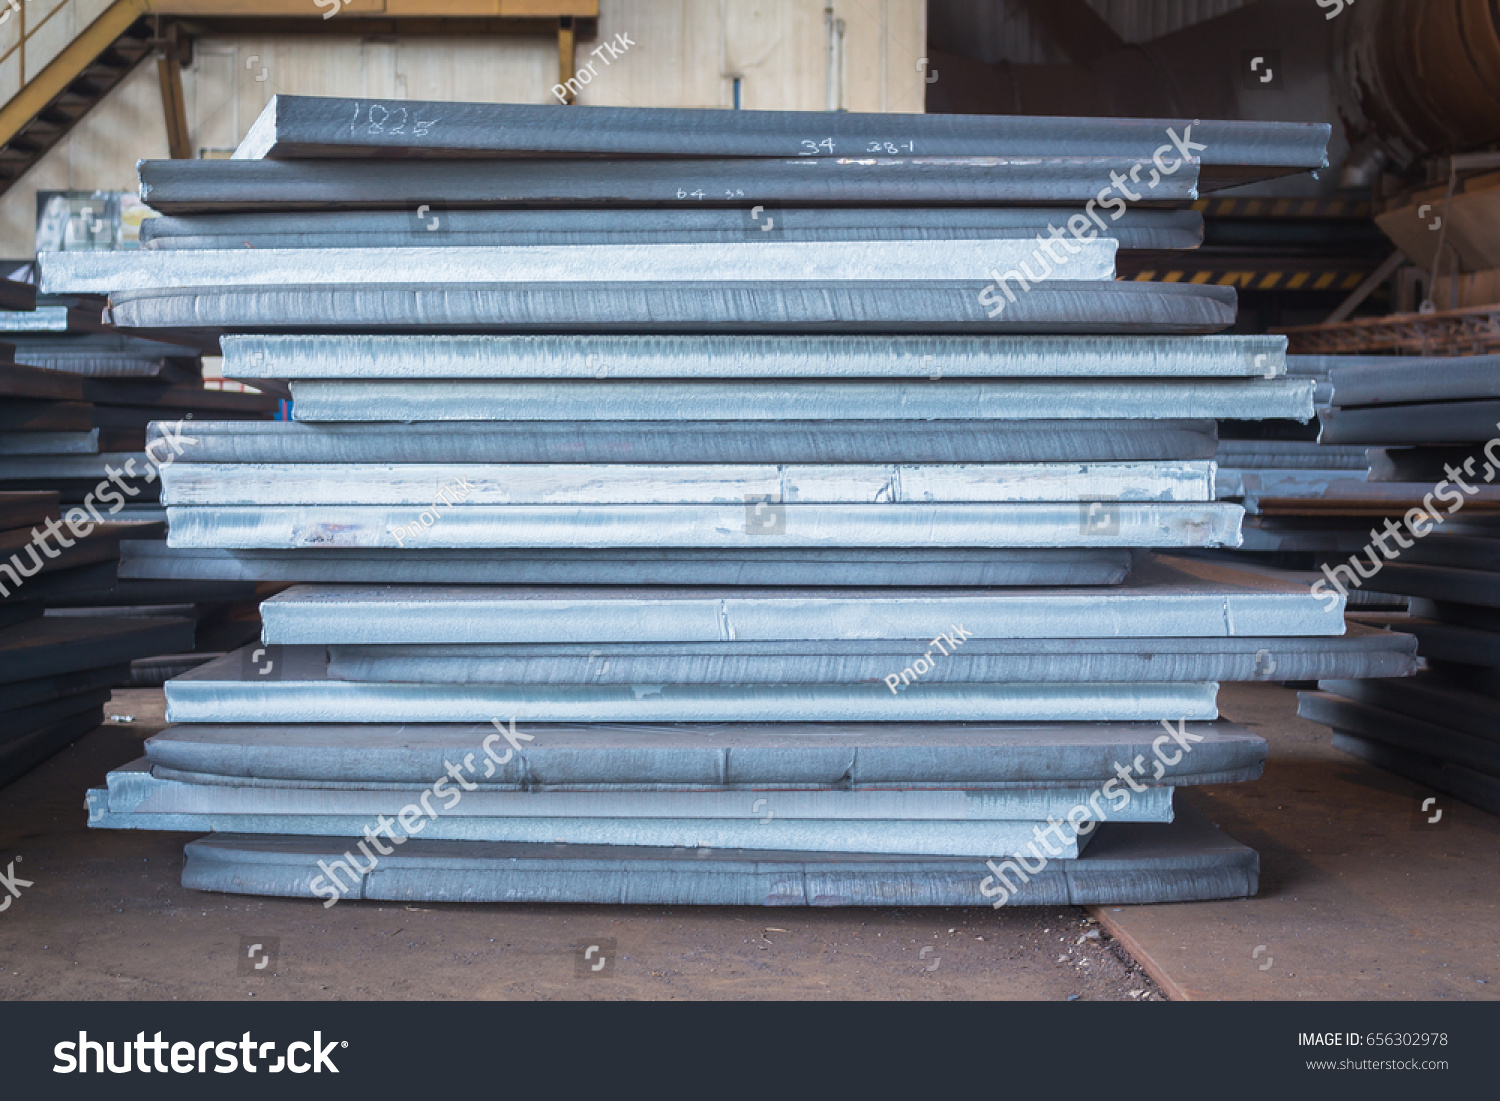 Steel texture, Steel stack, Steel industry background. #656302978